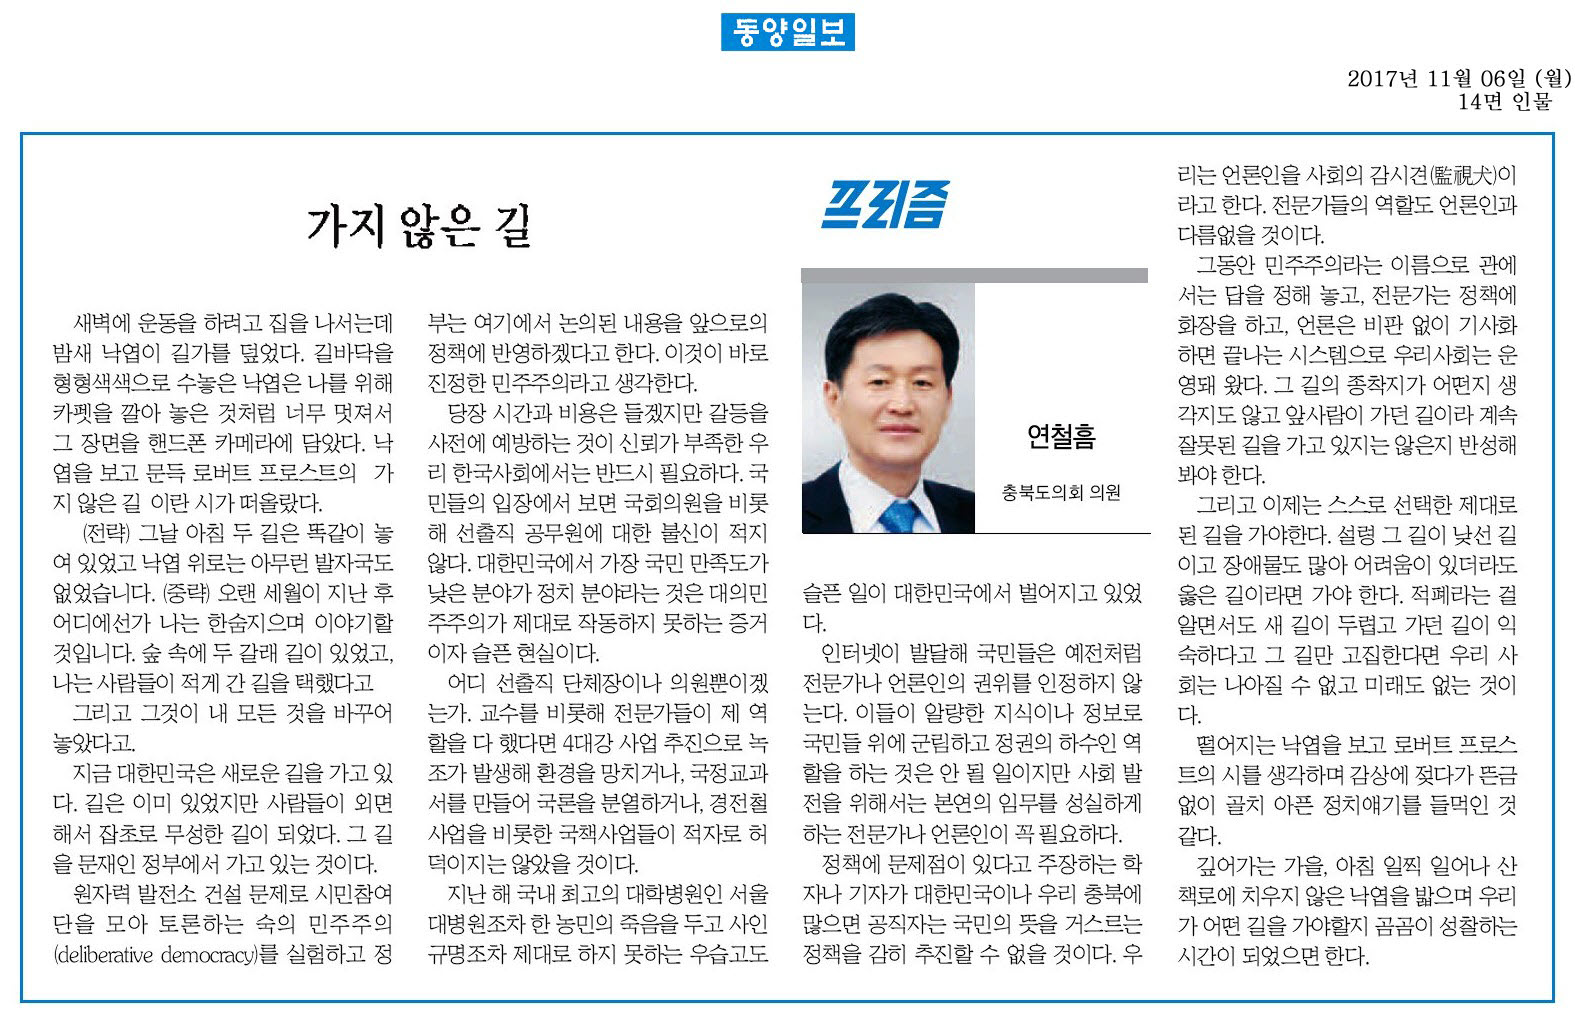 가지 않은 길 - 연철흠 의원(동양일보 2017년 11월 6일) - 1